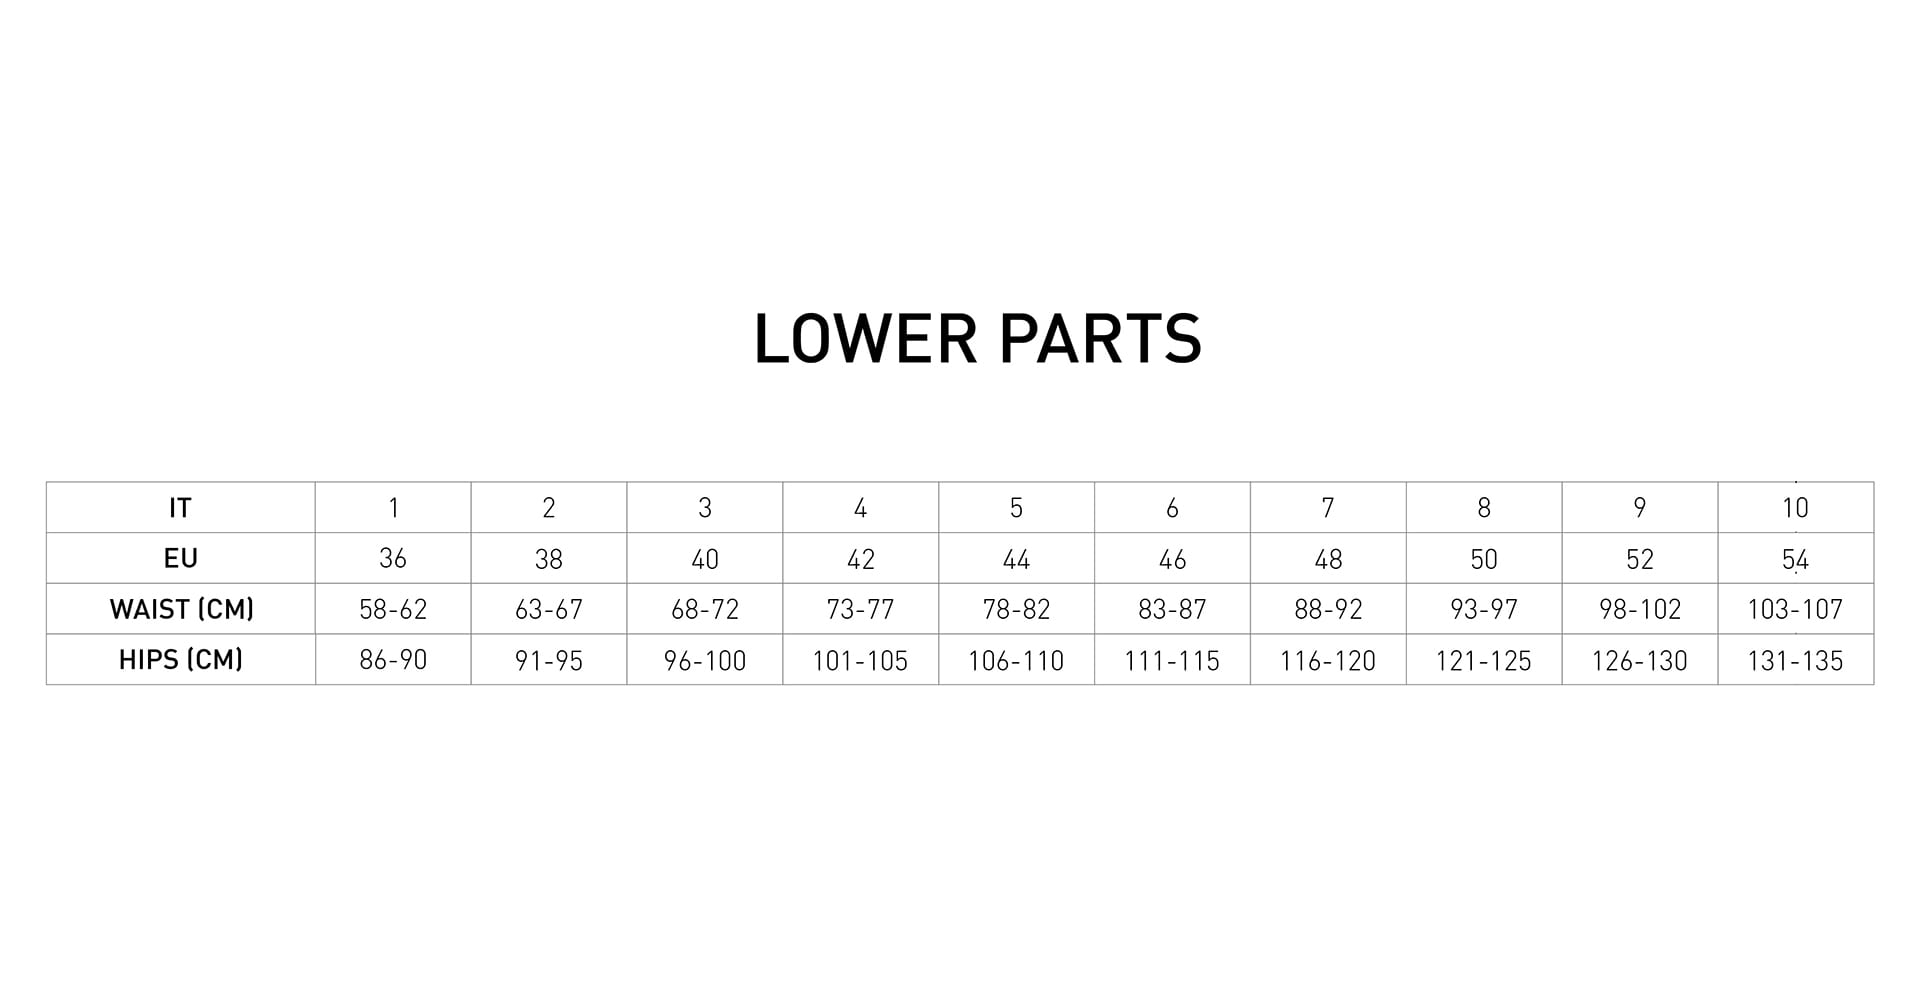 Lower Parts Size Measurement